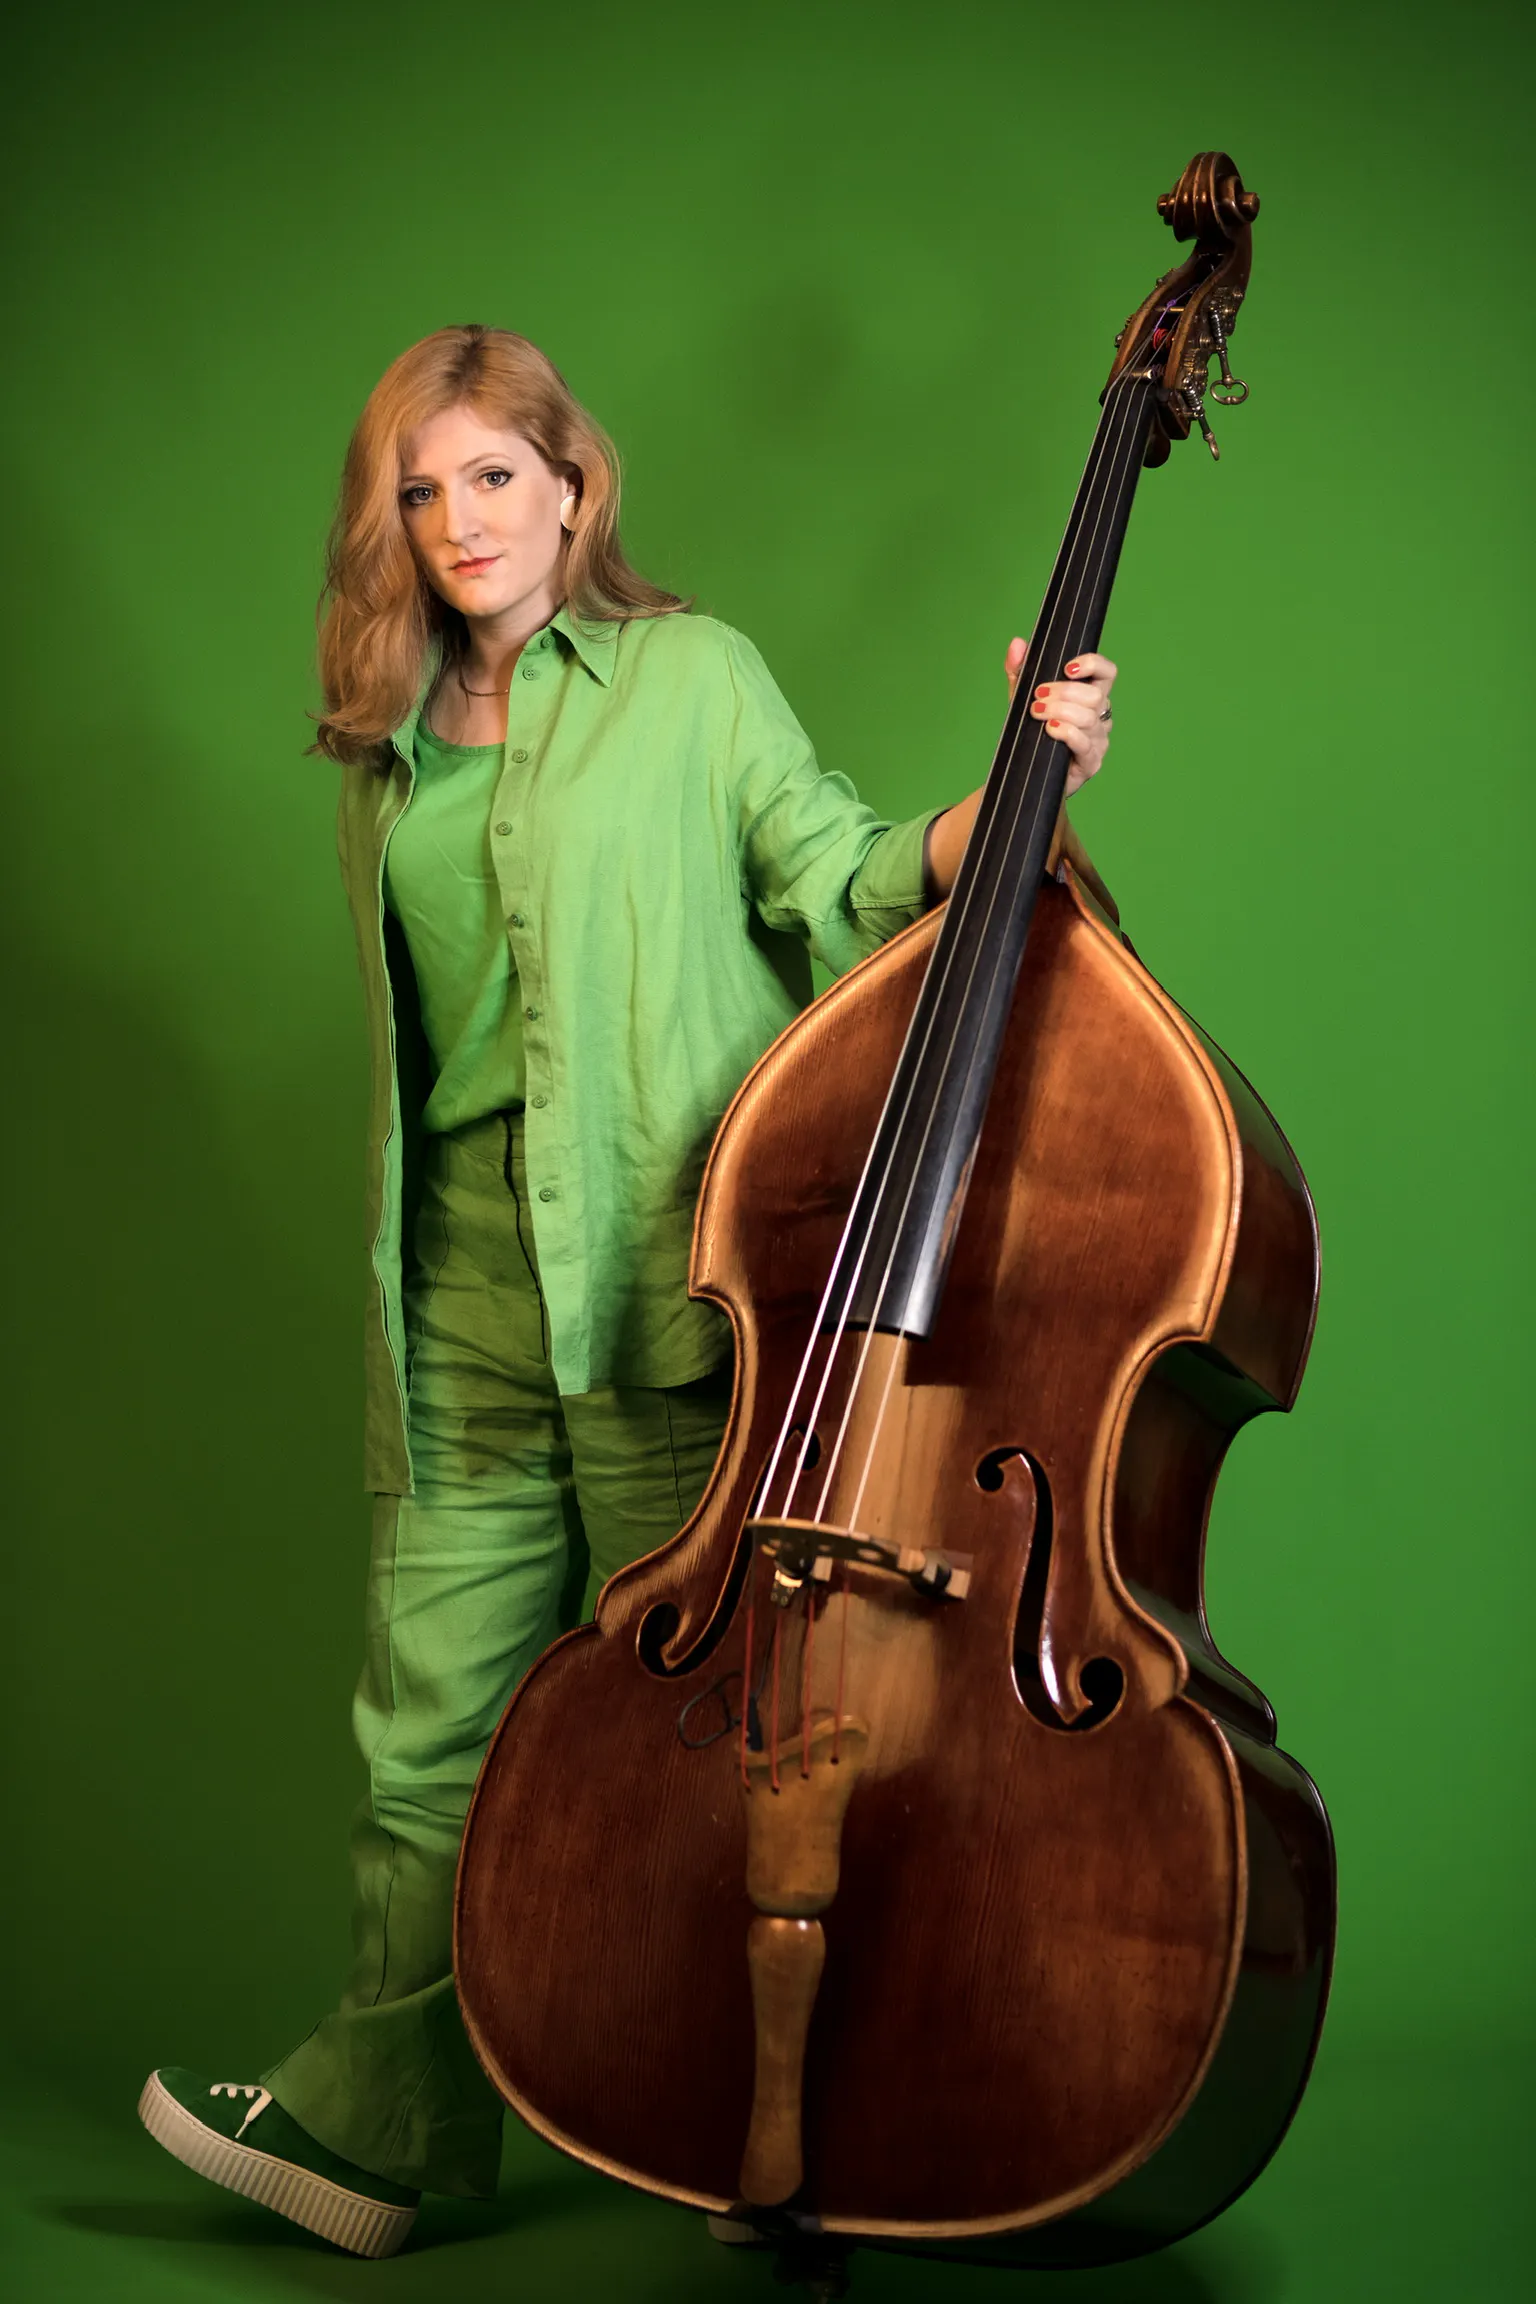 Lisa Wulff vor grünem Hintergrund mit ihrem Kontrabass